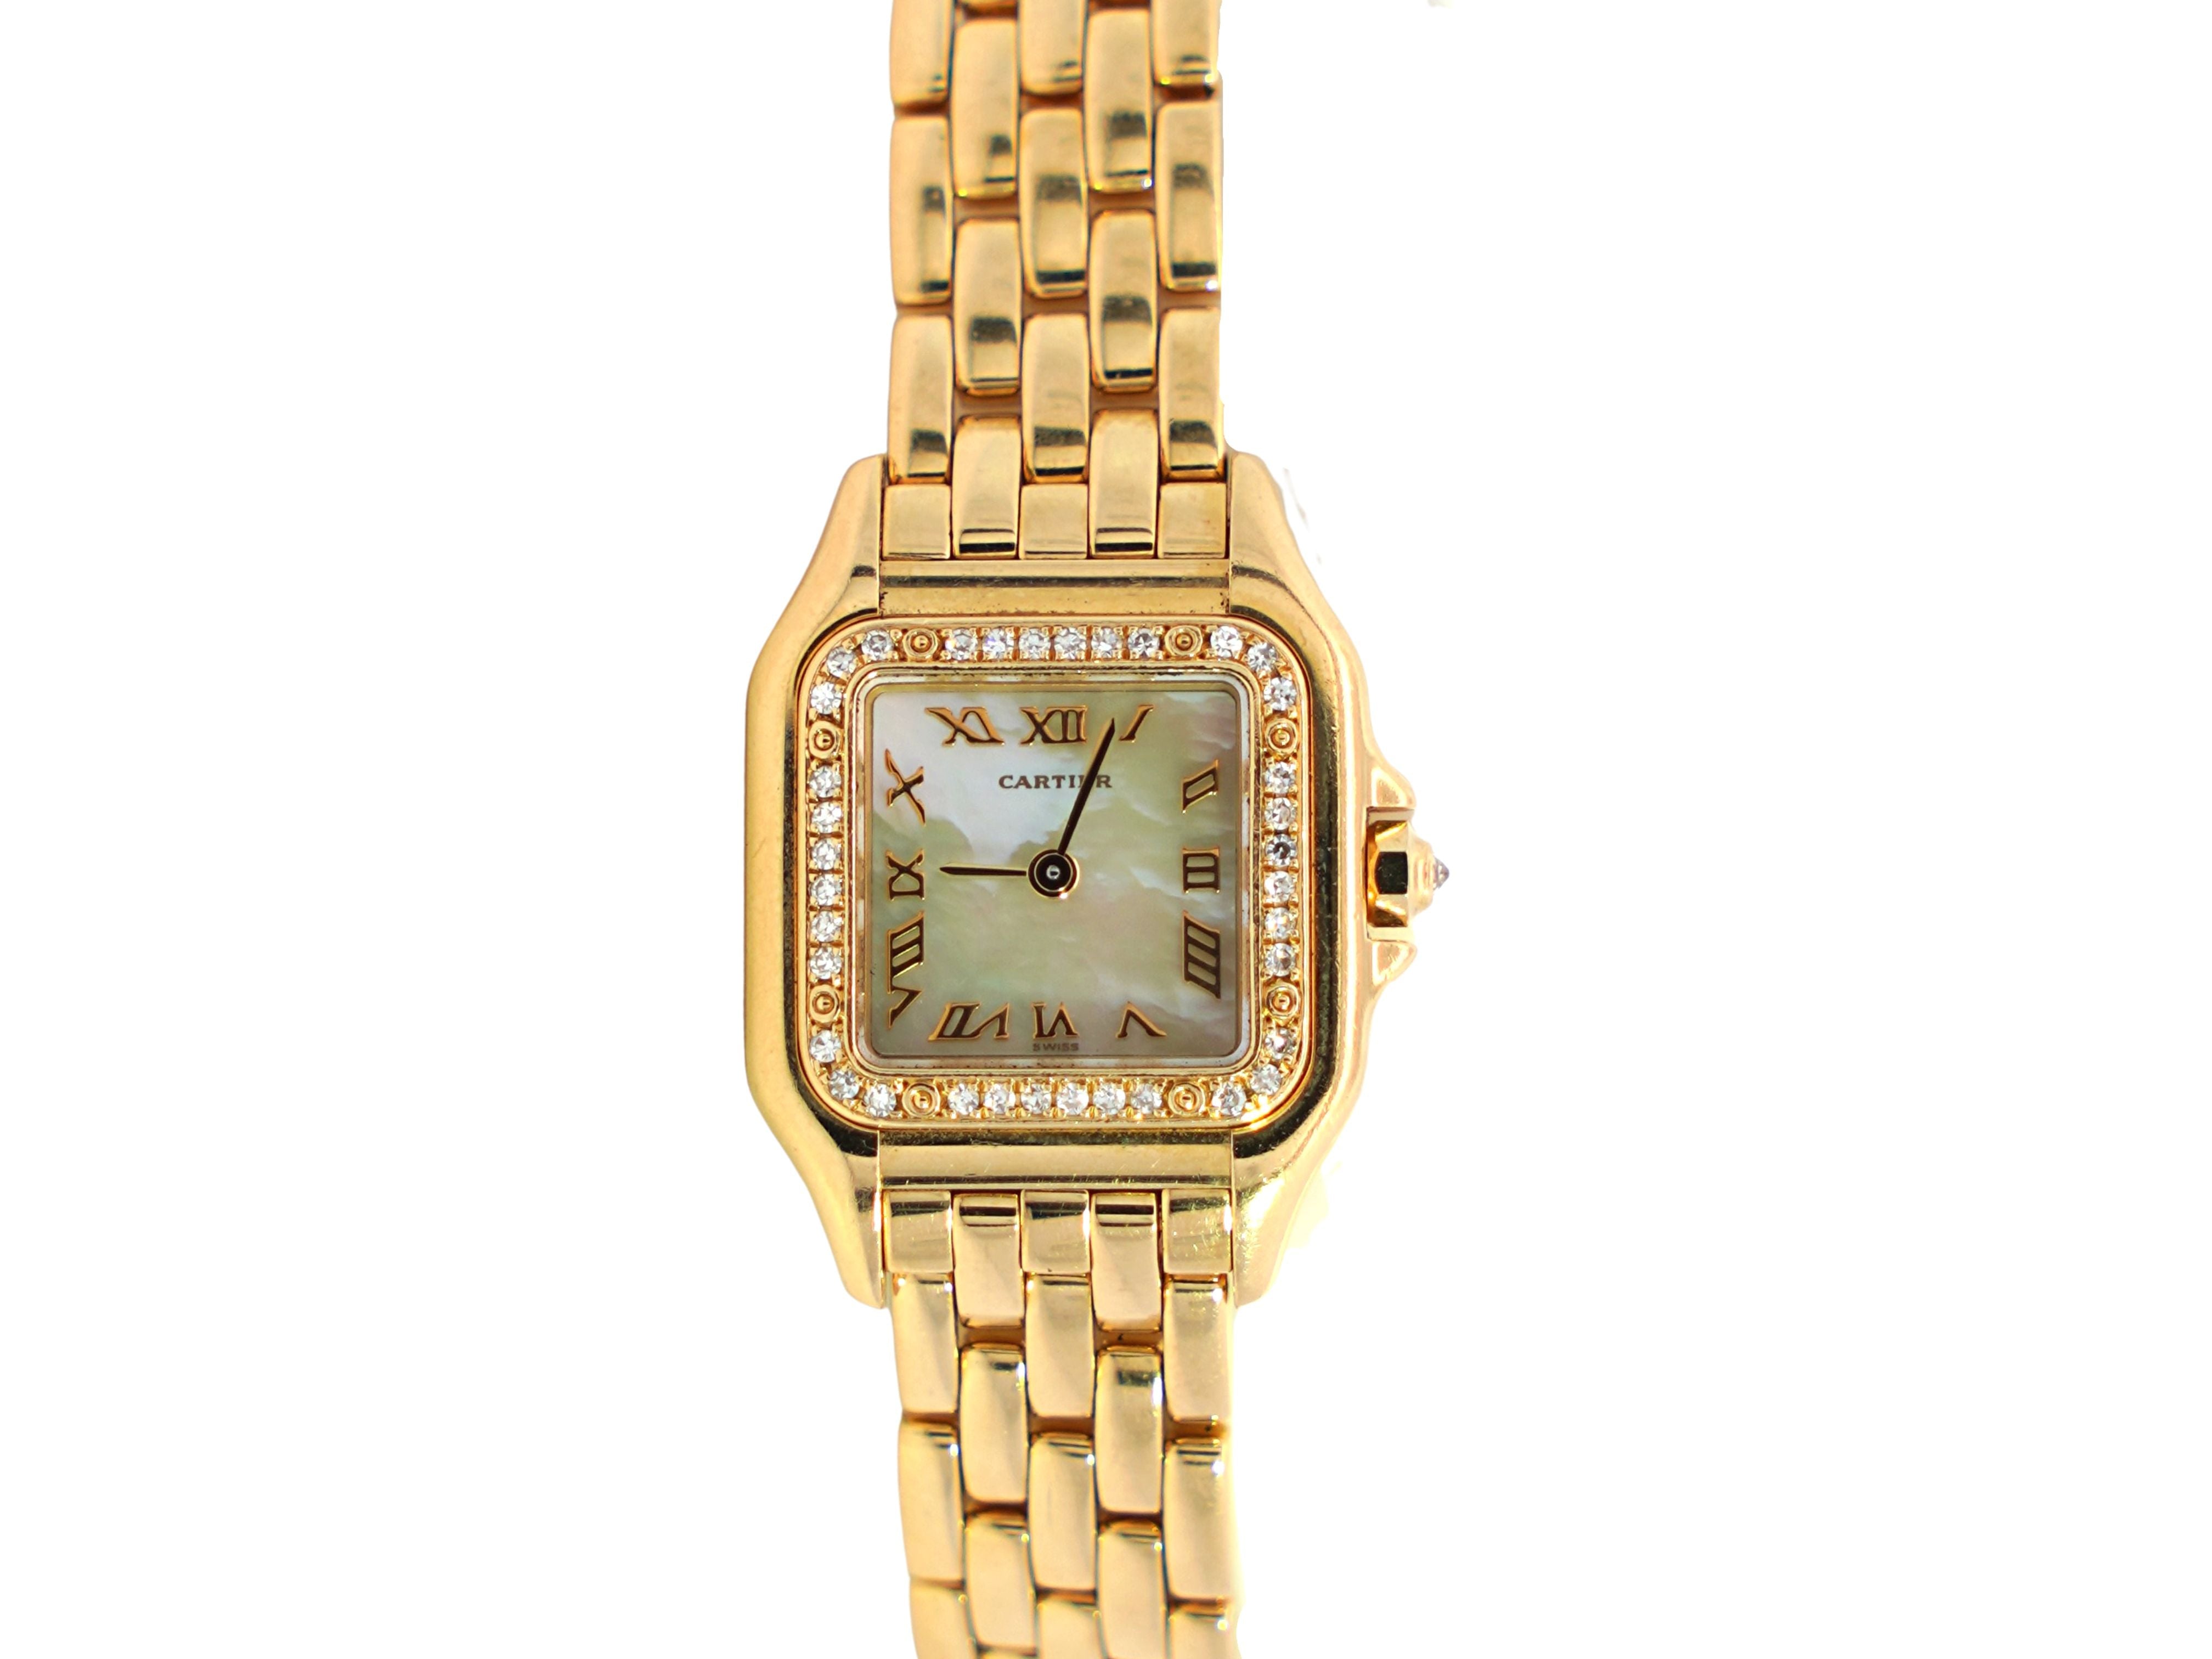 Cartier Panthere MOP 22mm Ref. 1280 2 Factory Diamond Bezel Watch in 18K Yellow Gold-Watches-ASSAY